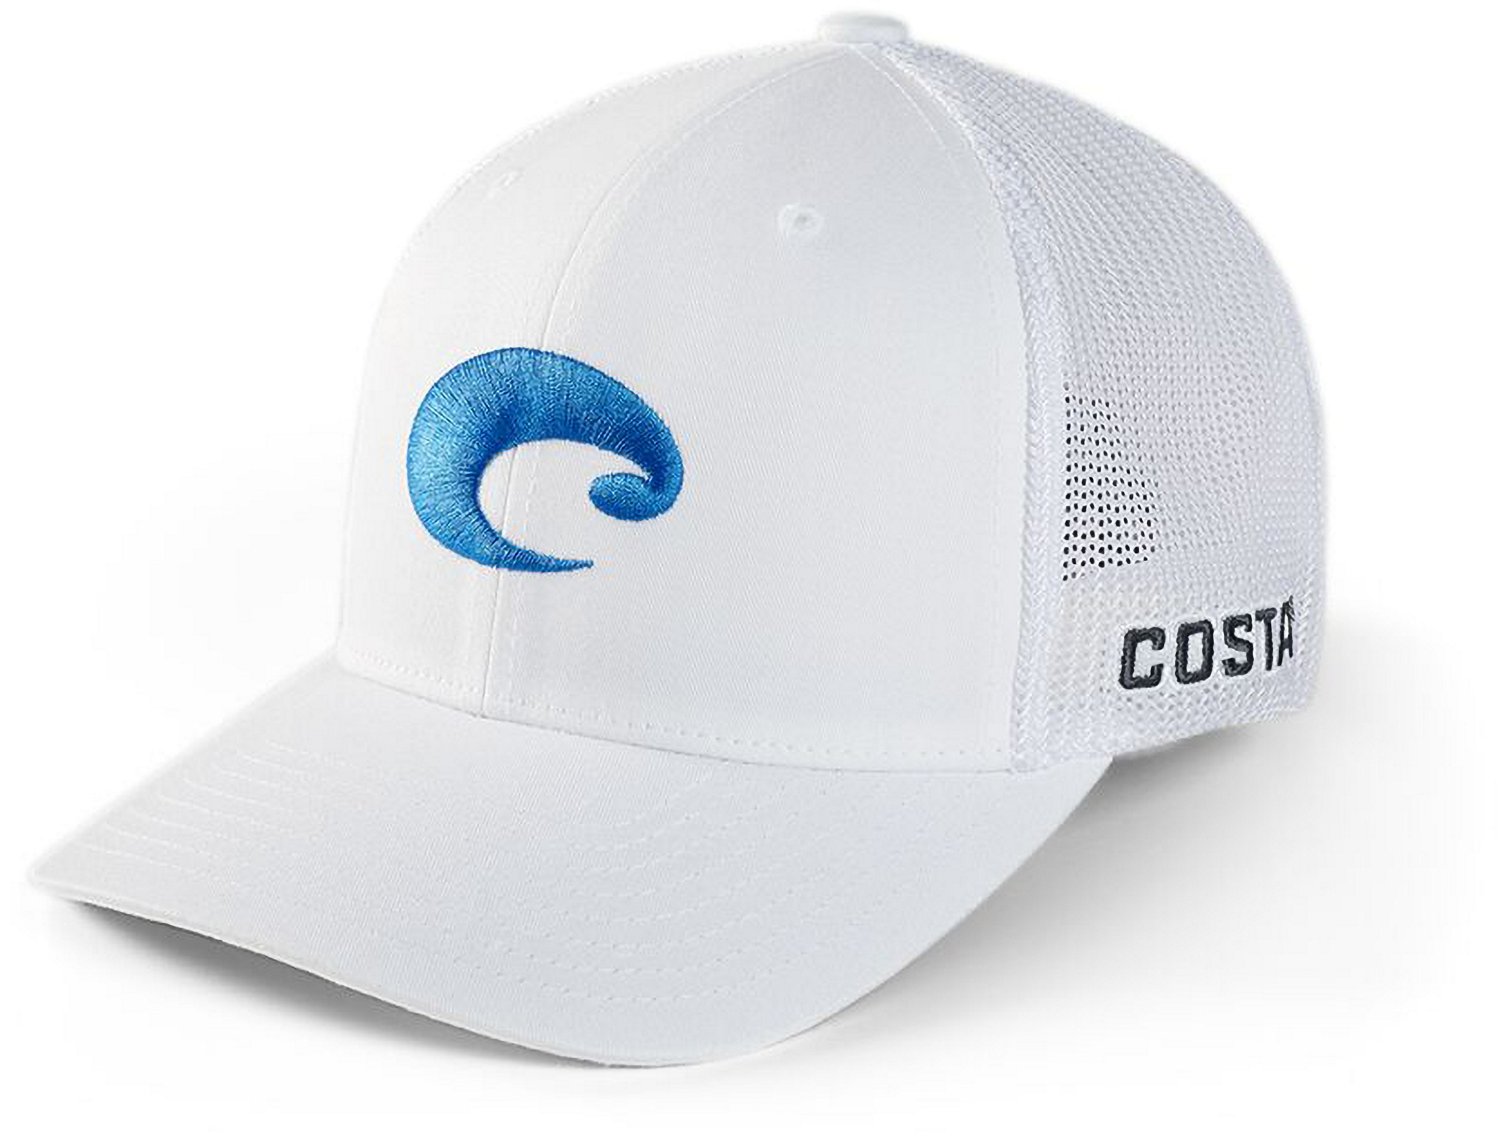 Costa Tarpon Topo Trucker Hat